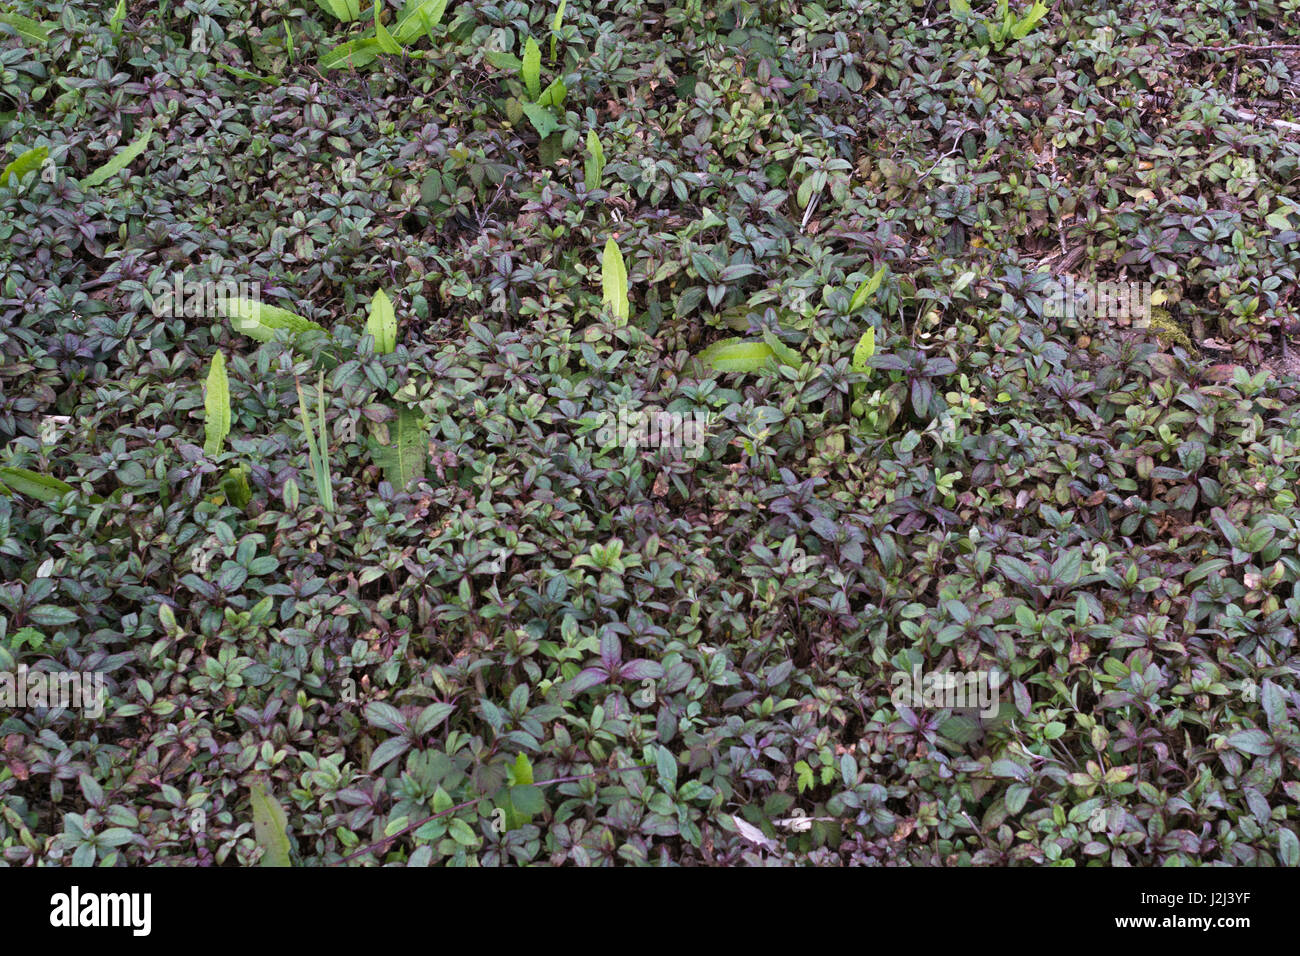 Pré-jeune feuillage floraison / feuilles / Impatiens glandulifera balsamine de l'himalaya. La lutte contre les mauvaises herbes envahissantes des milieux humides de la rivière. La germination des mauvaises herbes mauvaises herbes, patch, l'invasion Banque D'Images